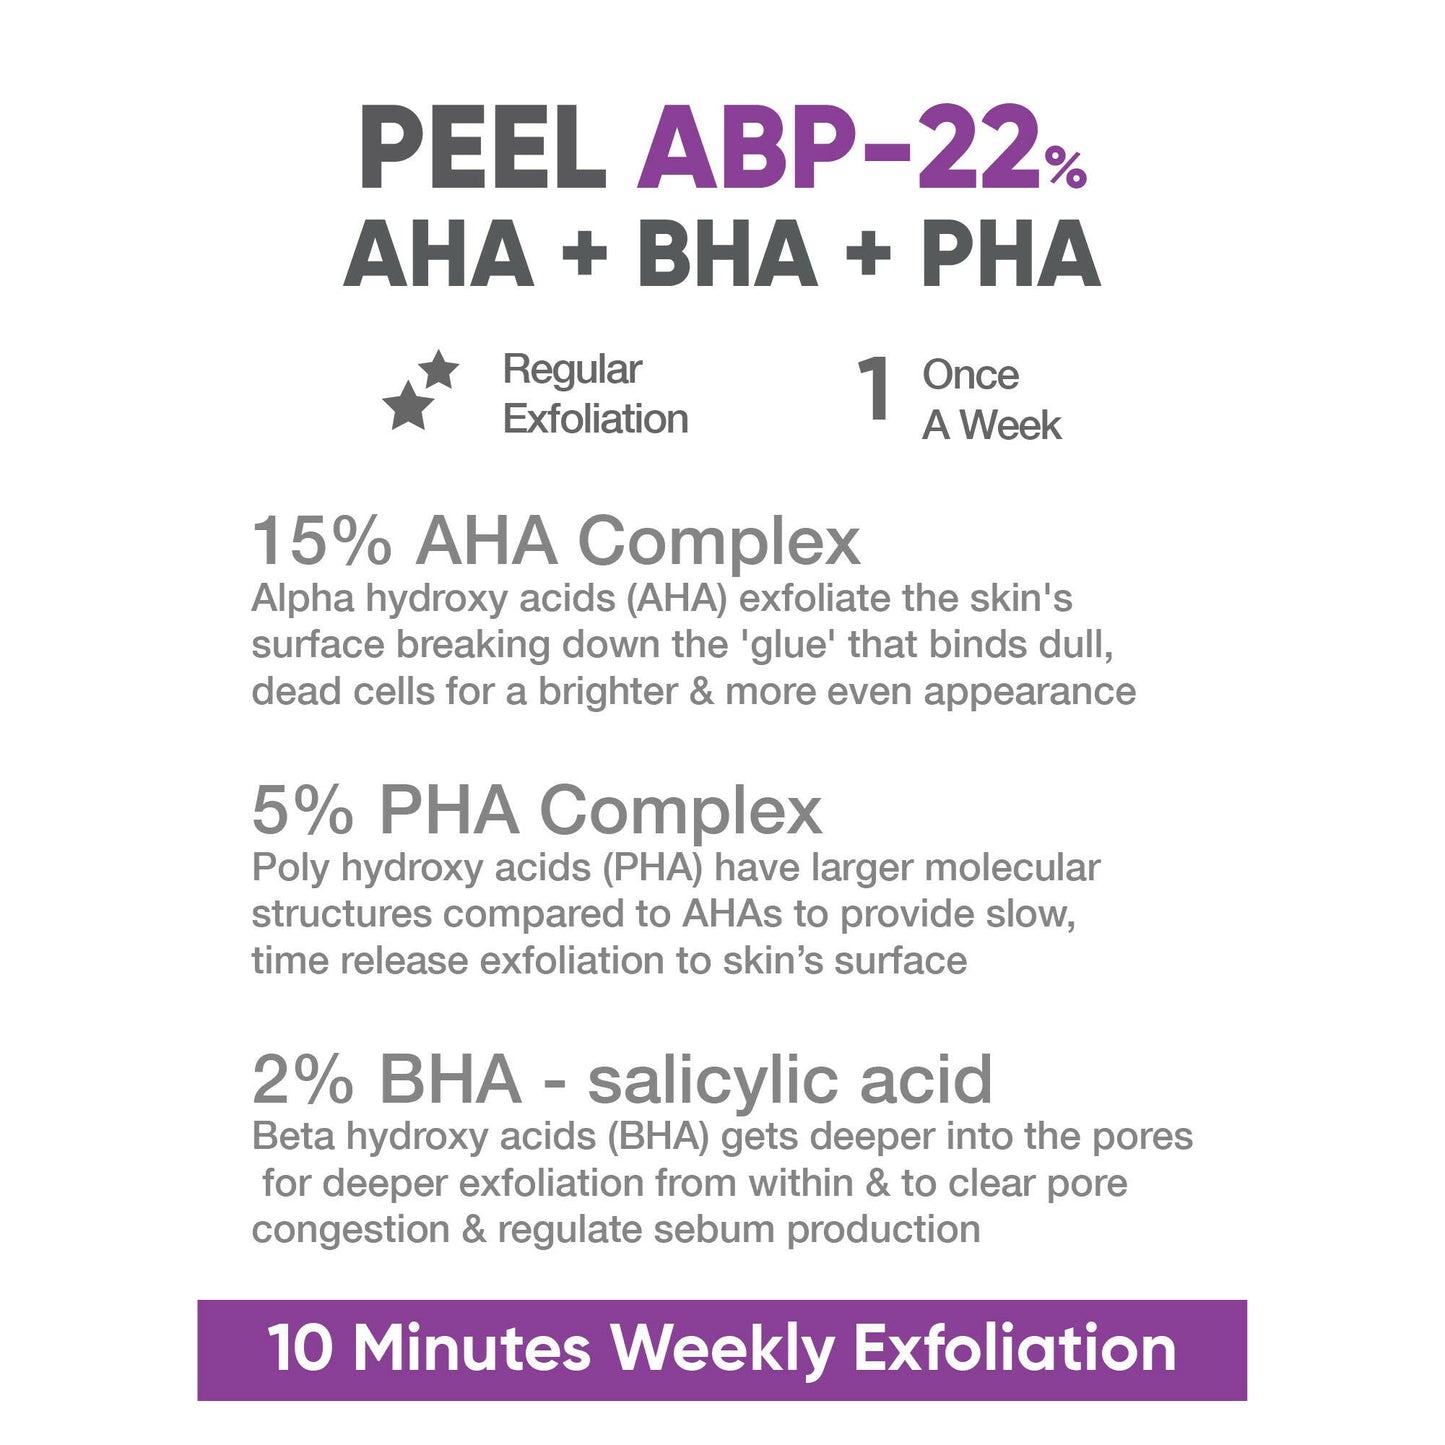 Cos-IQ ABP 22% Regular Use Exfoliating Peel